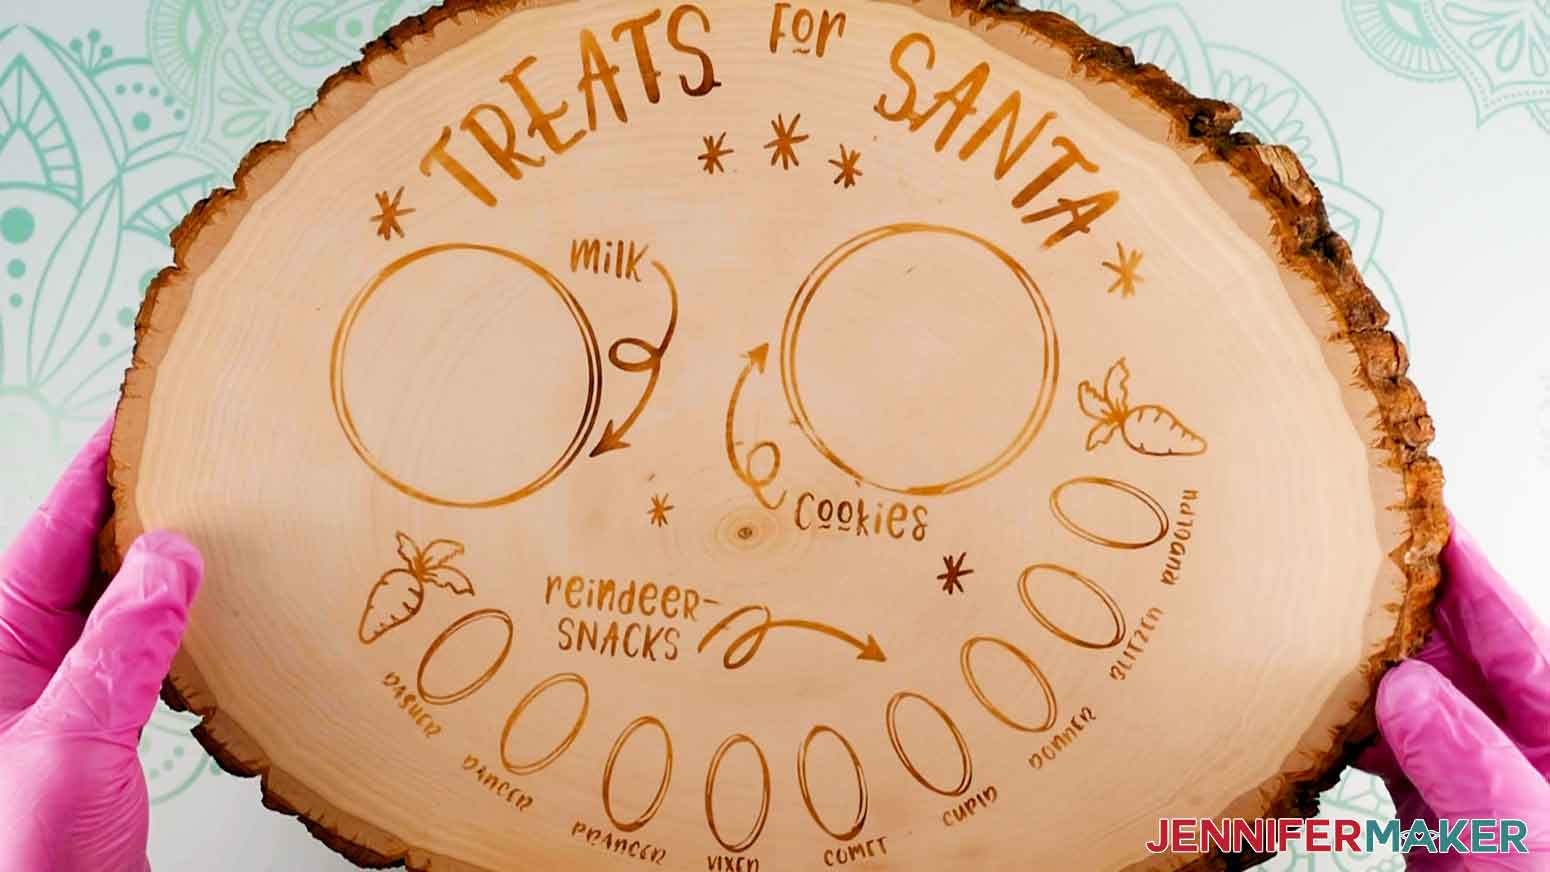 Wood burned design on Santa cookie tray